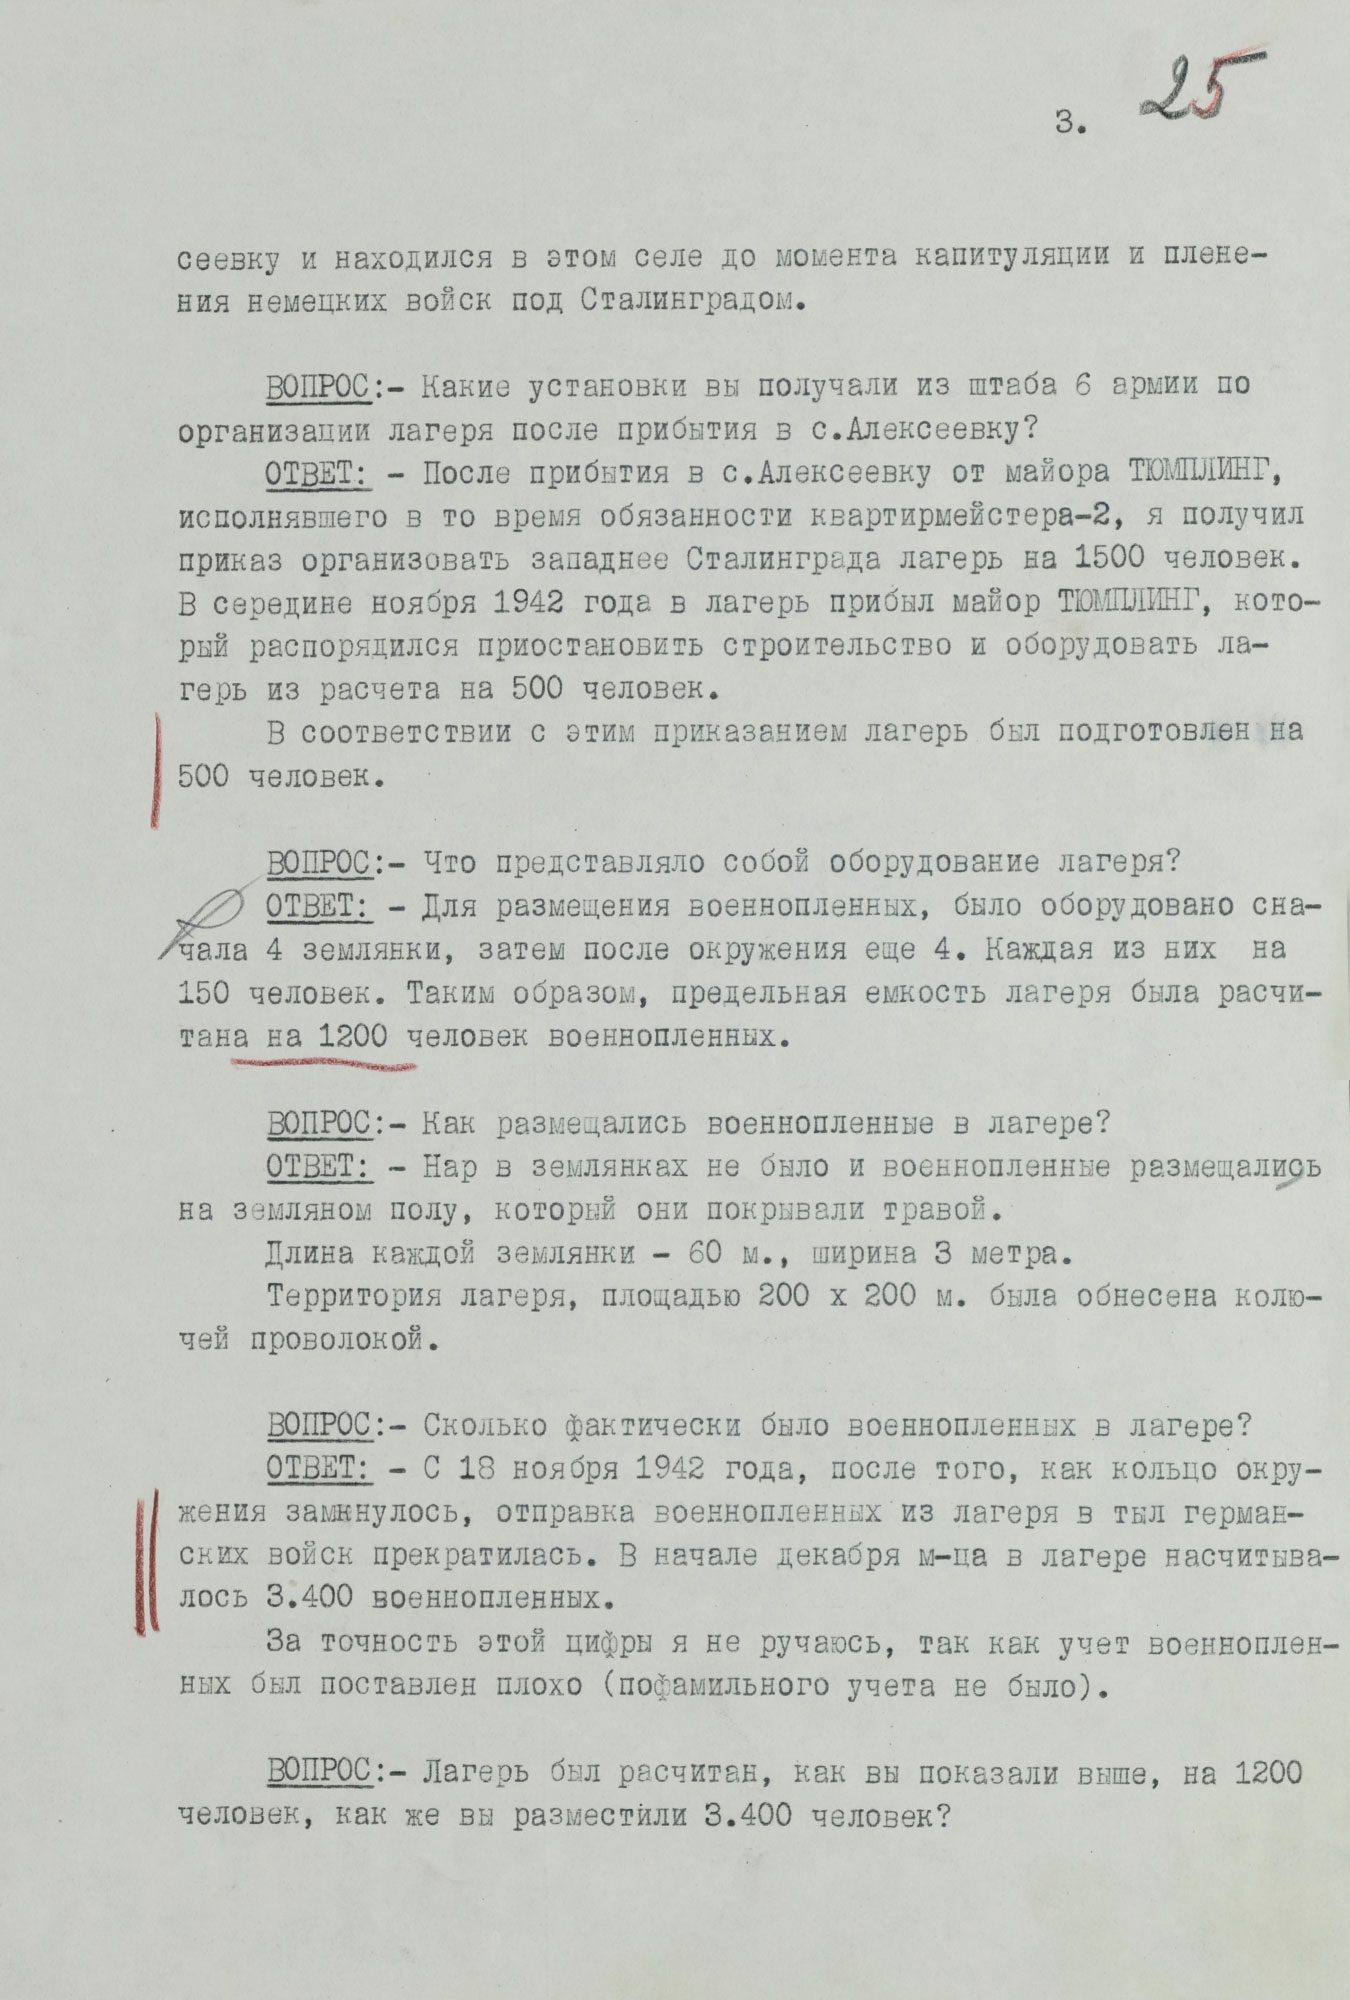 Протокол допроса военнопленного полковника германской армии КЕРПЕРТА Рудольфа, коменданта «Дулаг-205». 23 июня 1943 г. Страница 3